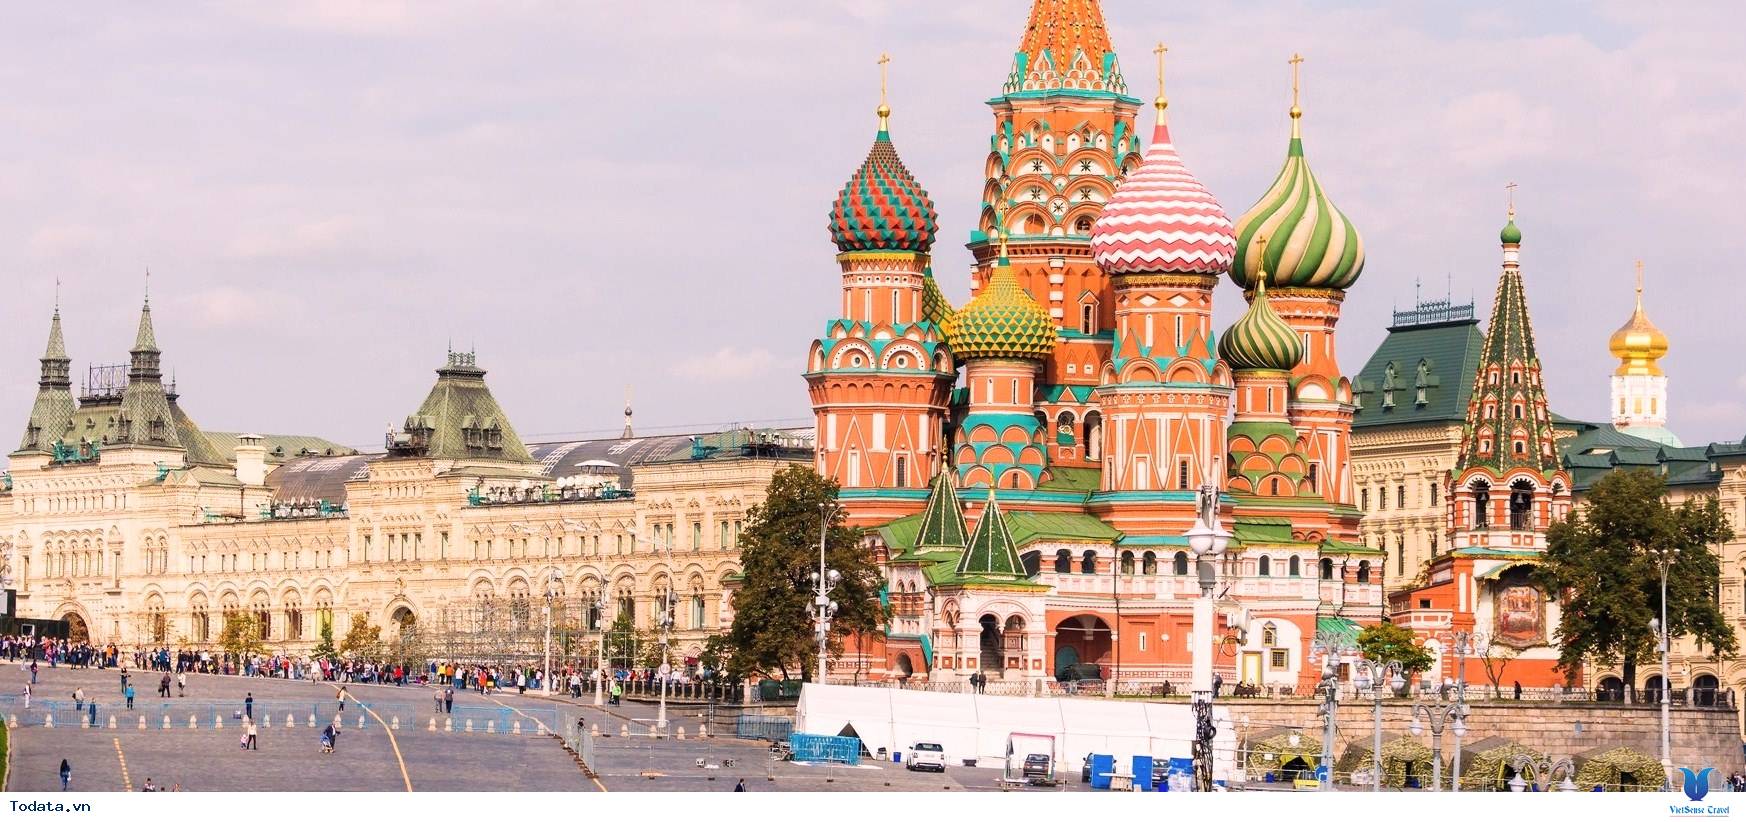 Hành trang kiến thức cần thiết để bắt đầu chuyến du lịch Nga